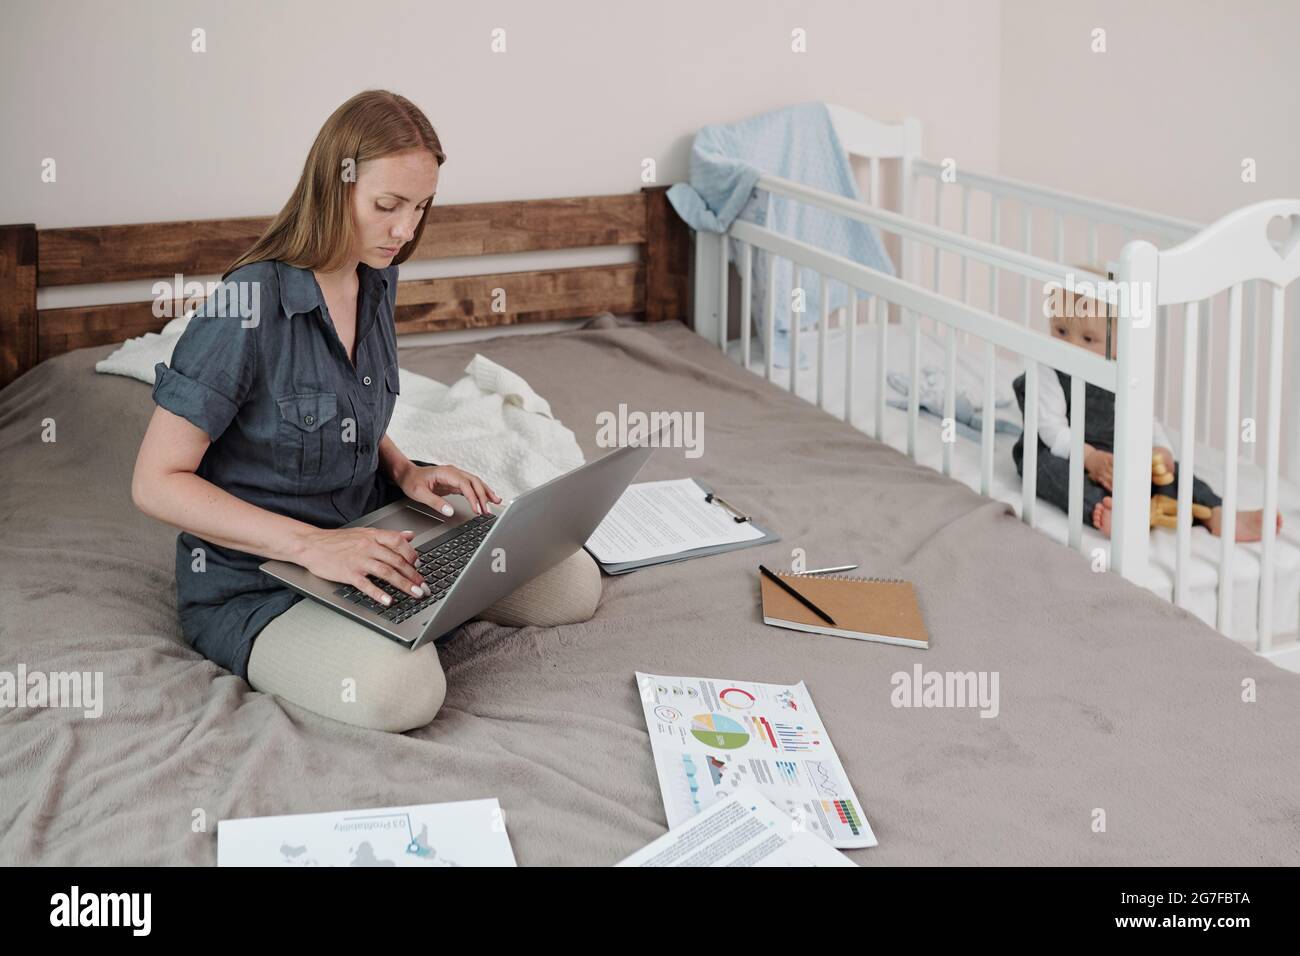 Jeune mère de bébé concentrée assise sur le lit et utilisant un ordinateur portable pendant que son fils la regarde de son berceau Banque D'Images